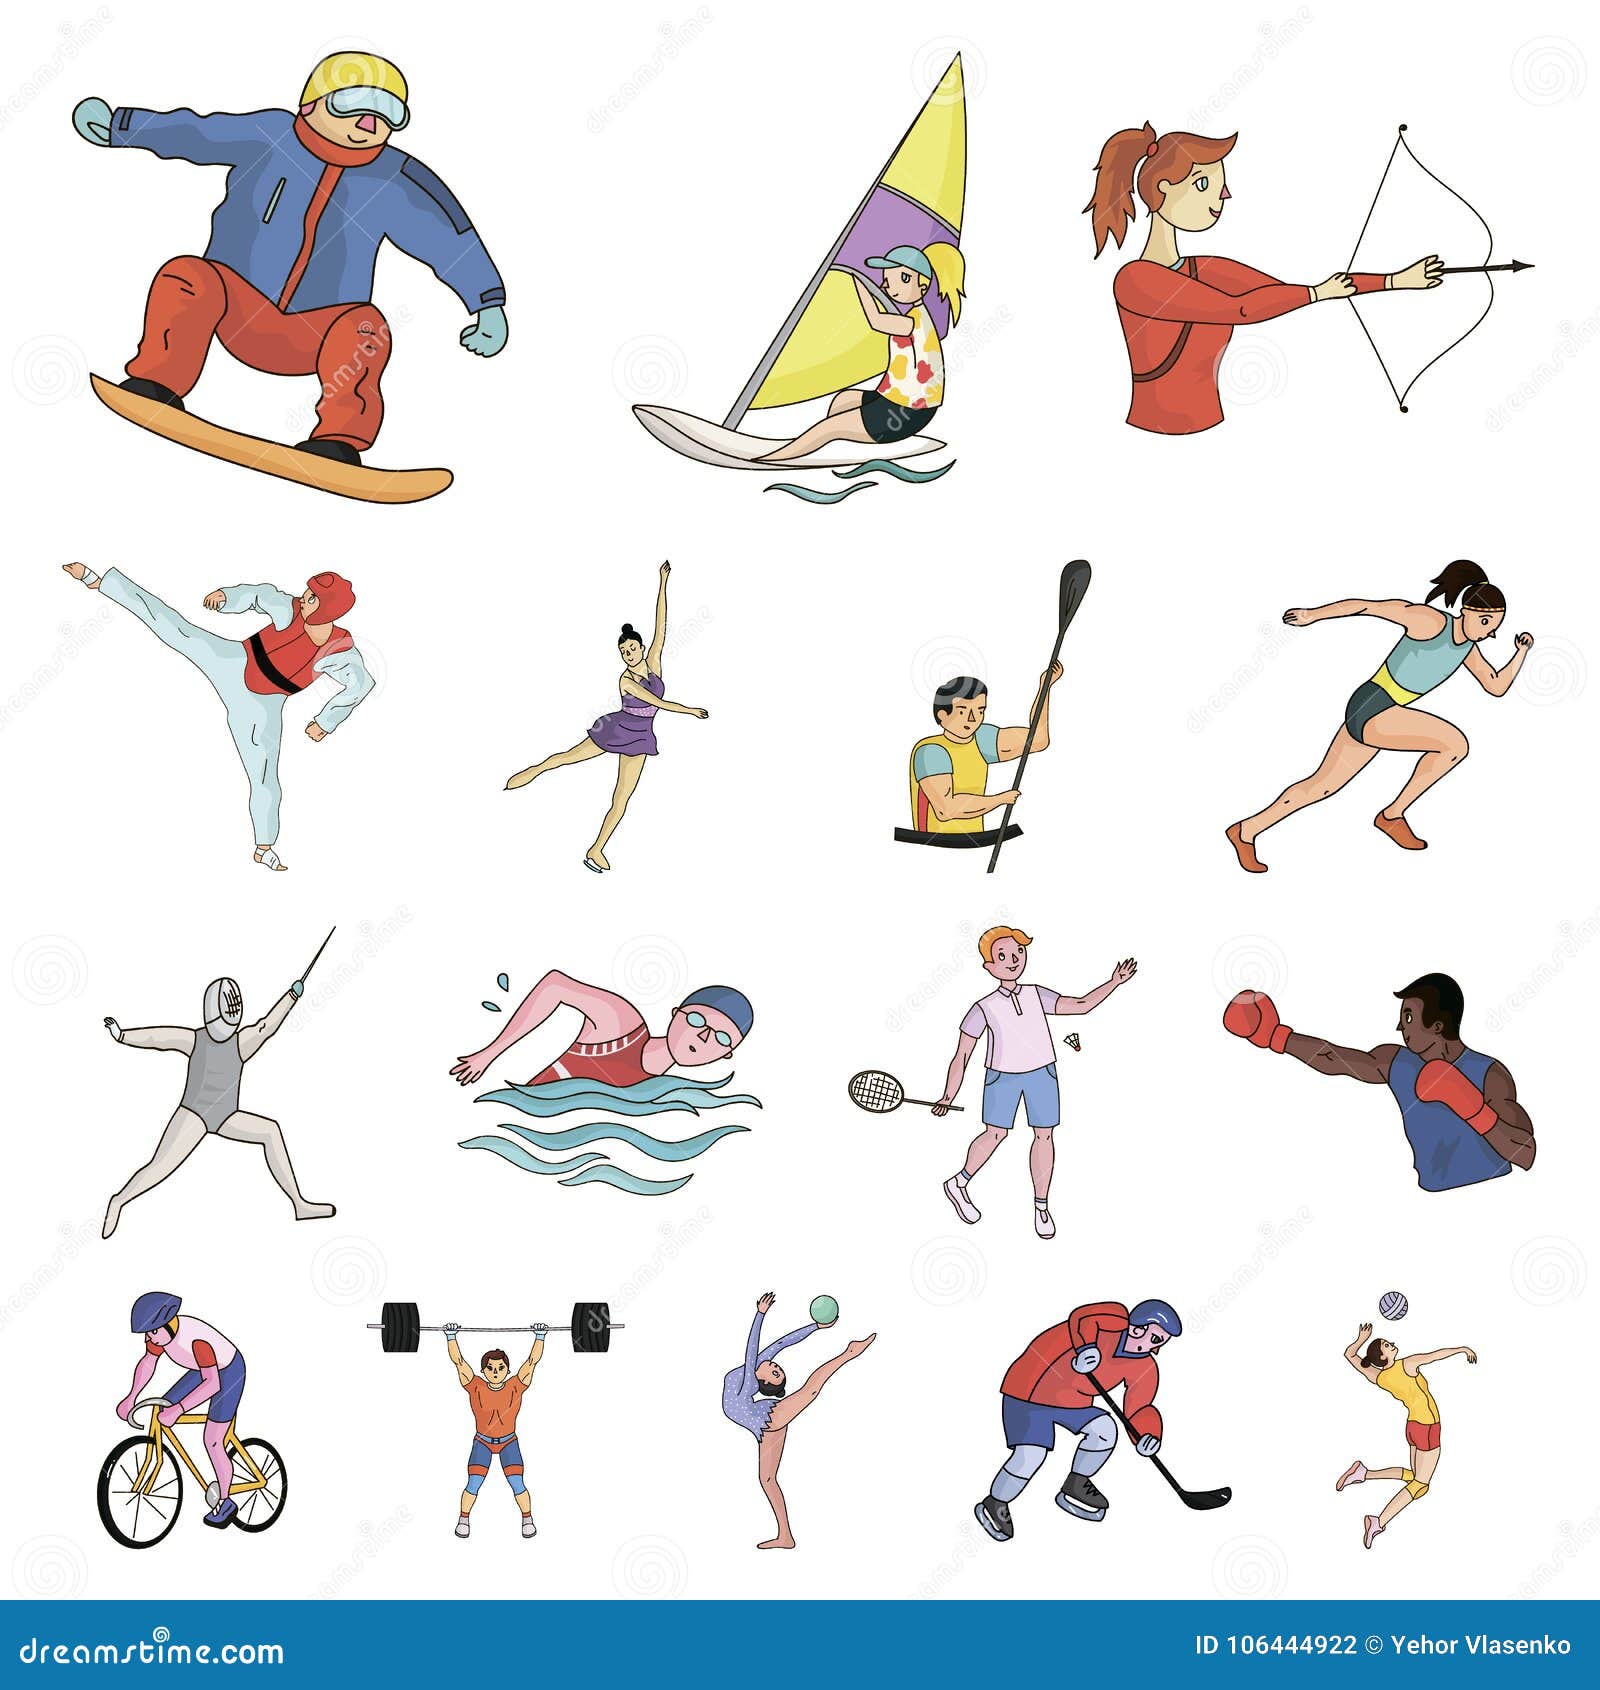 Different kind of sport. Различные виды спорта рисунок. Иллюстрации с разными видами спорта. Летние виды спорта рисунки. Разные виды спорта в одной картинке.